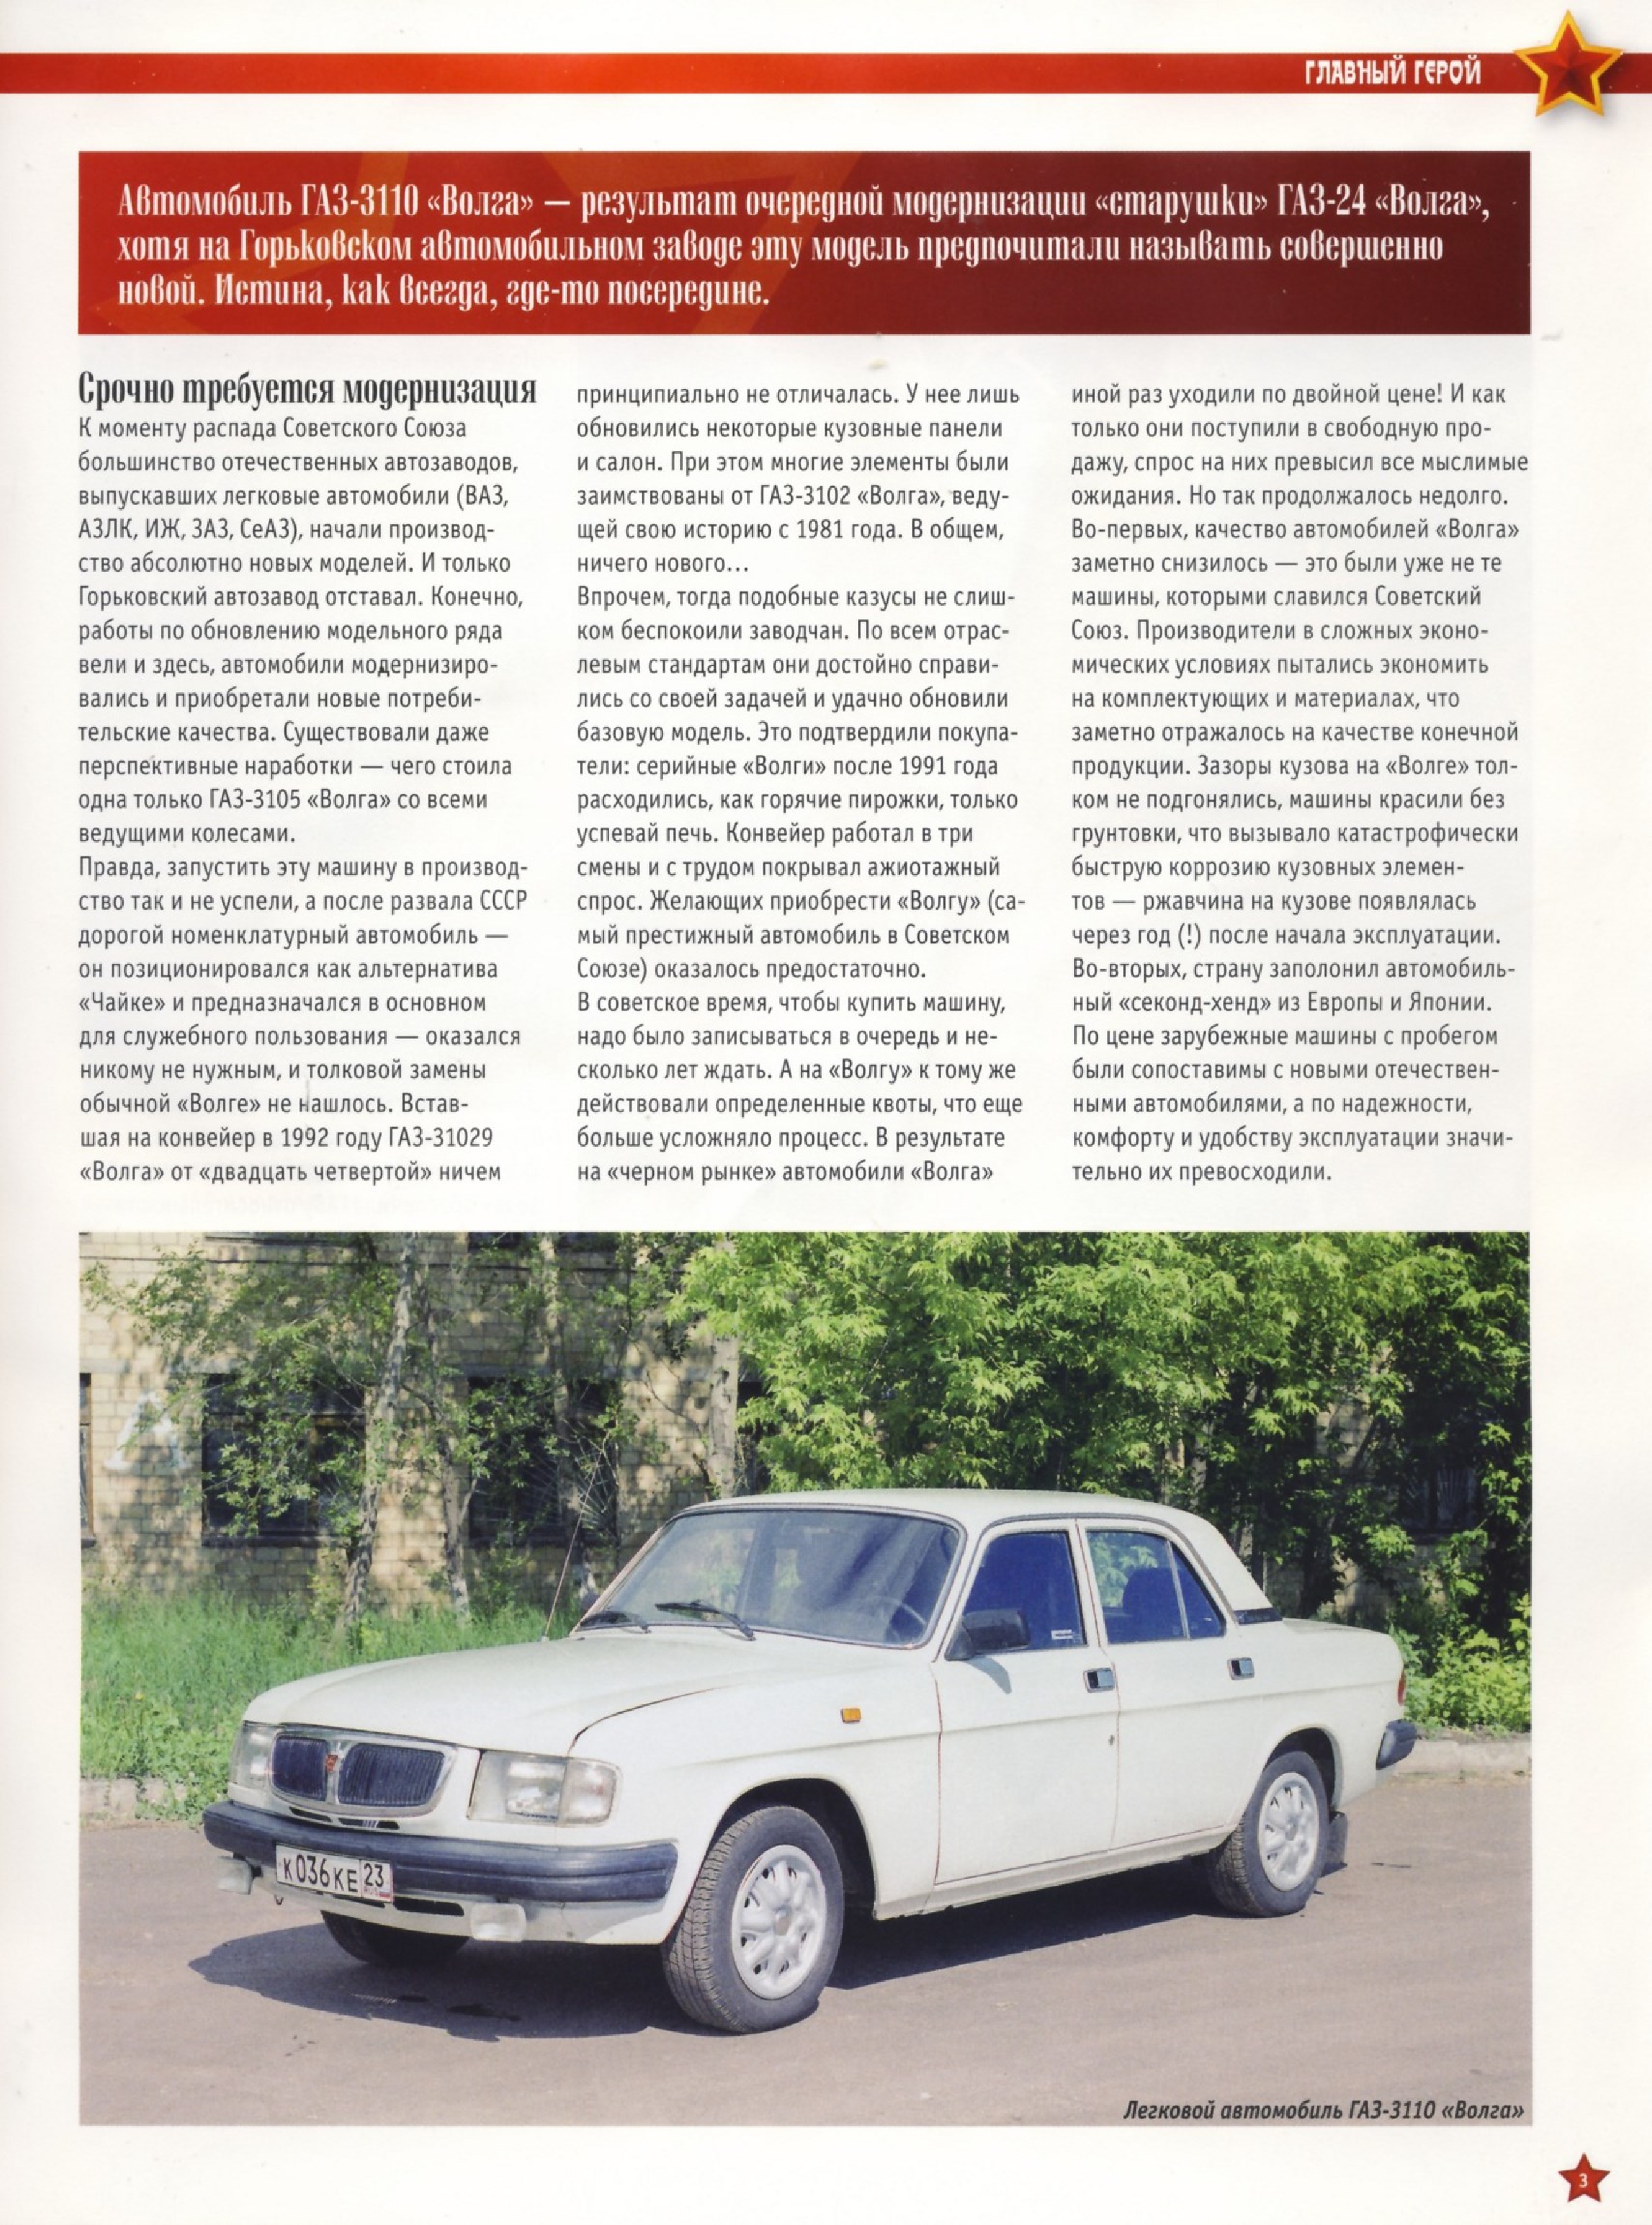 Automobile legend CCCP 189 GAZ 3110 VOLGA.pdf